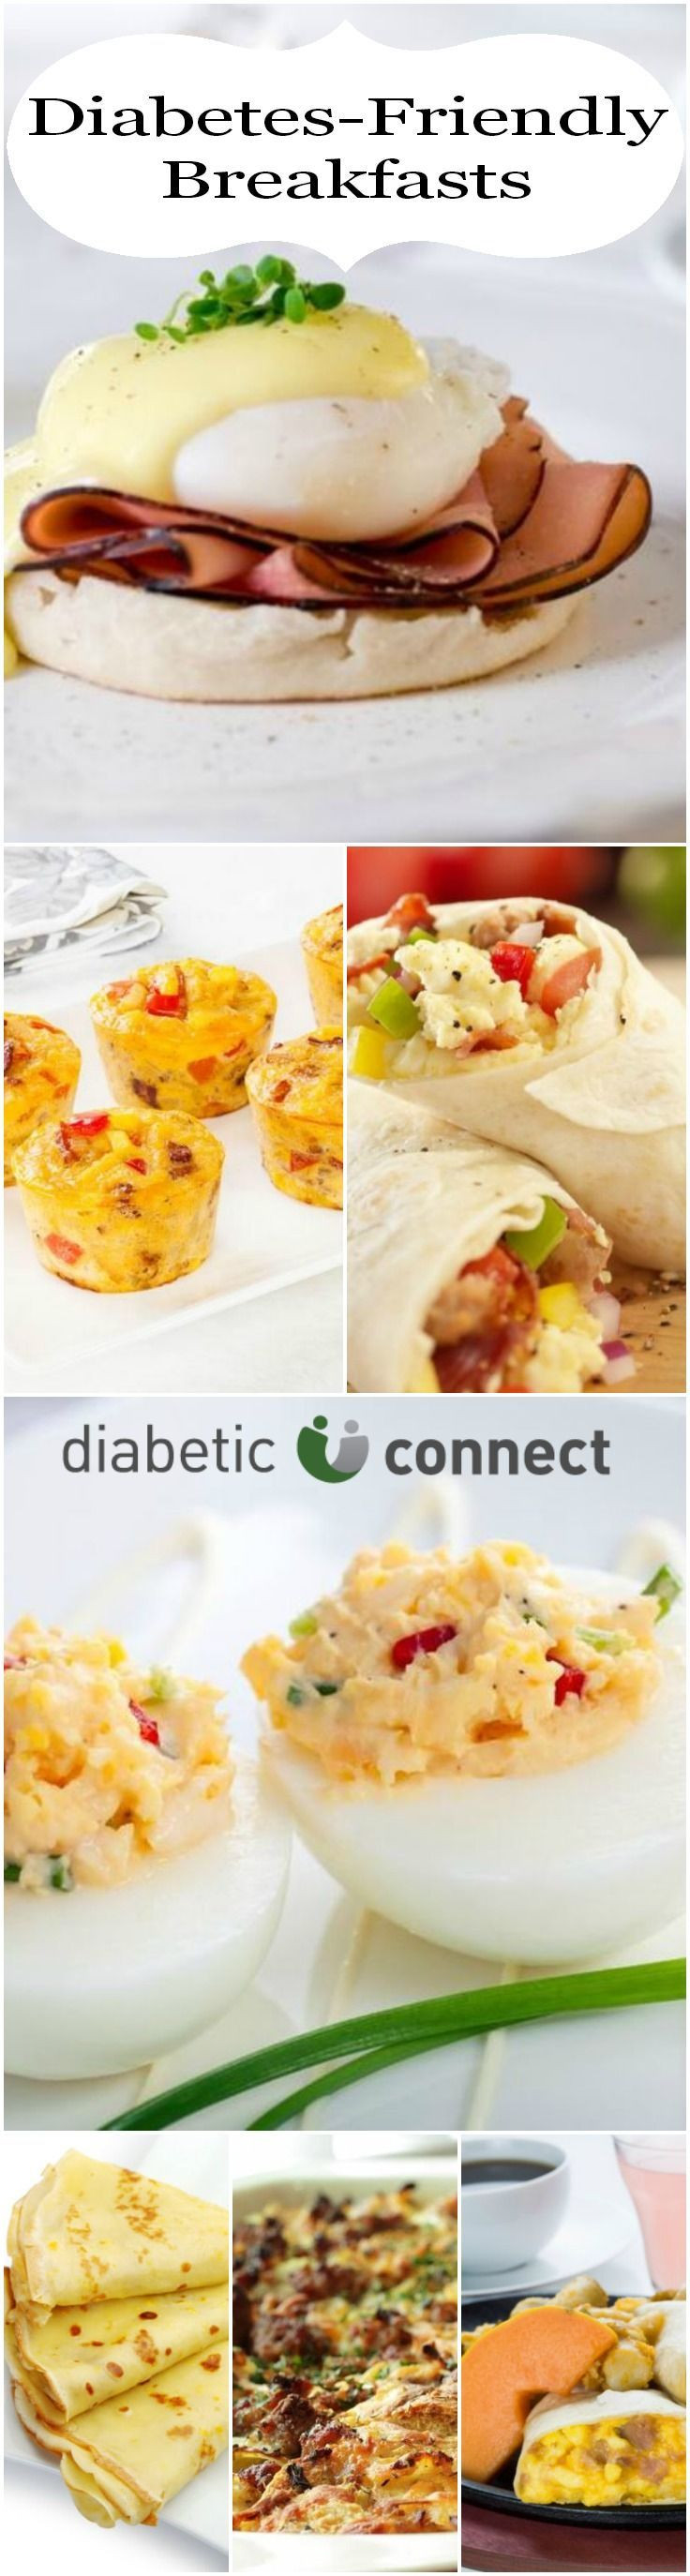 Diabetic Foods Recipes
 Diabetic breakfast ideas